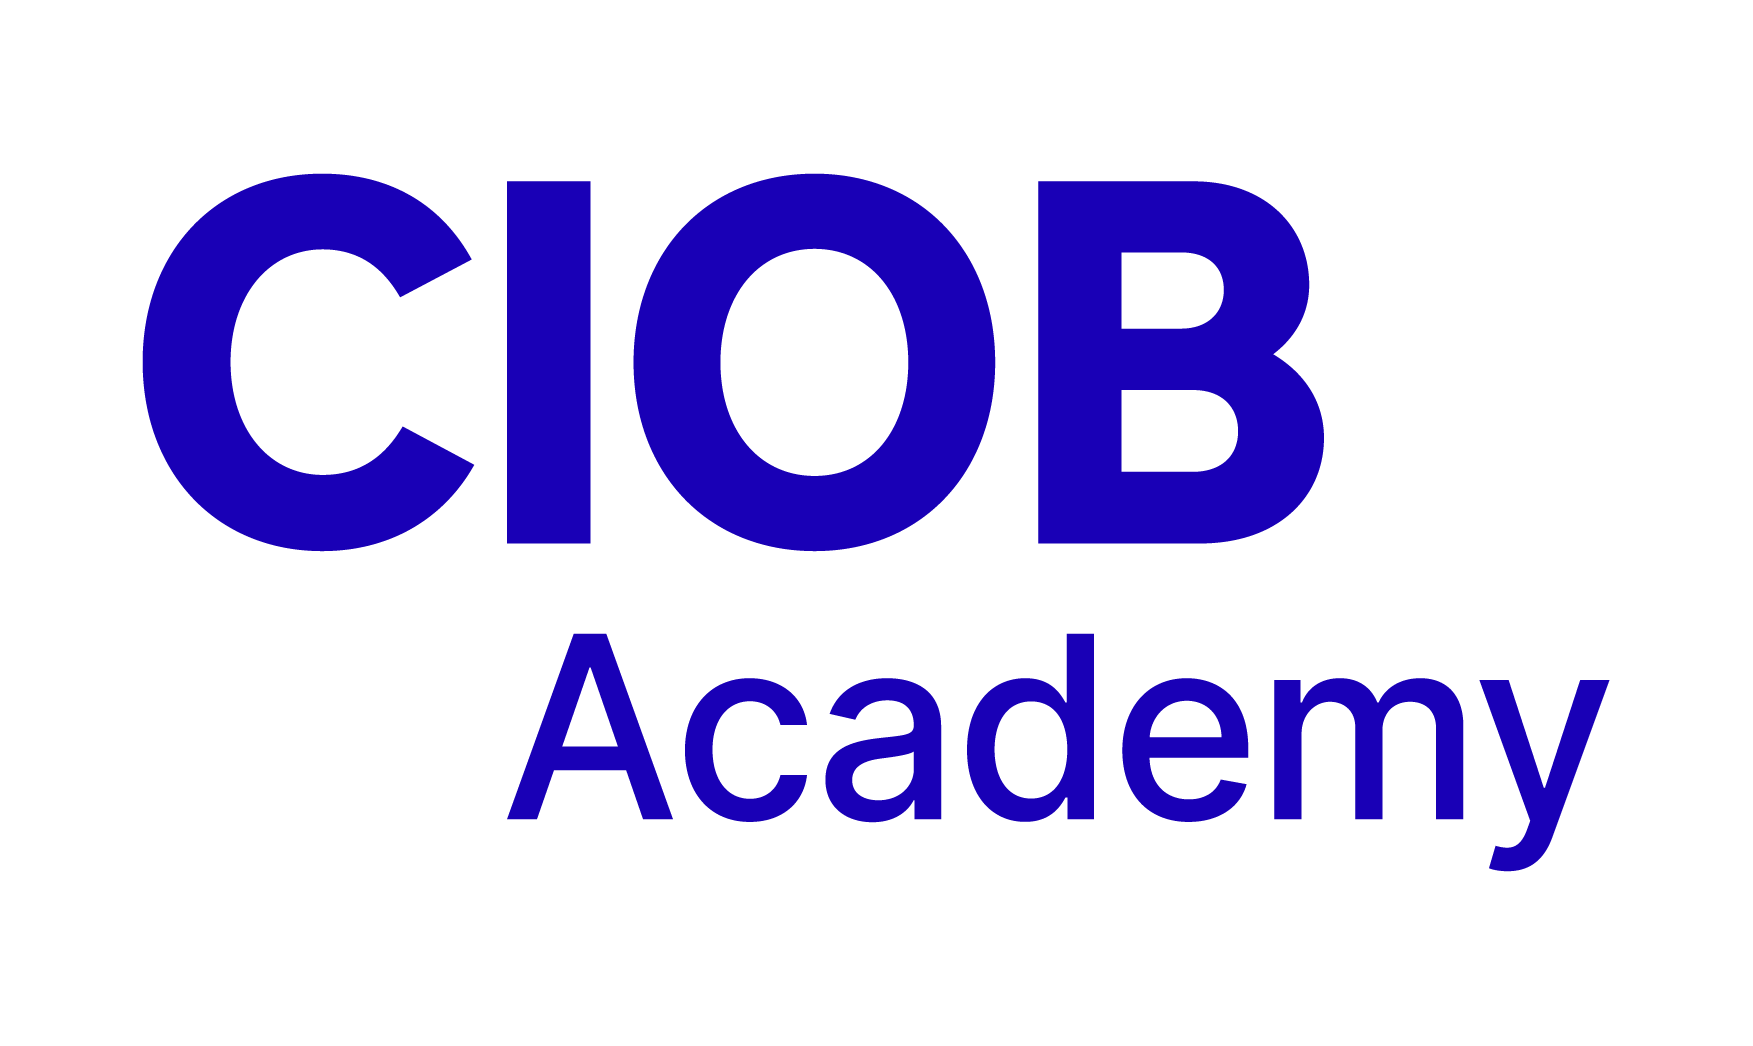 CIOB Academy